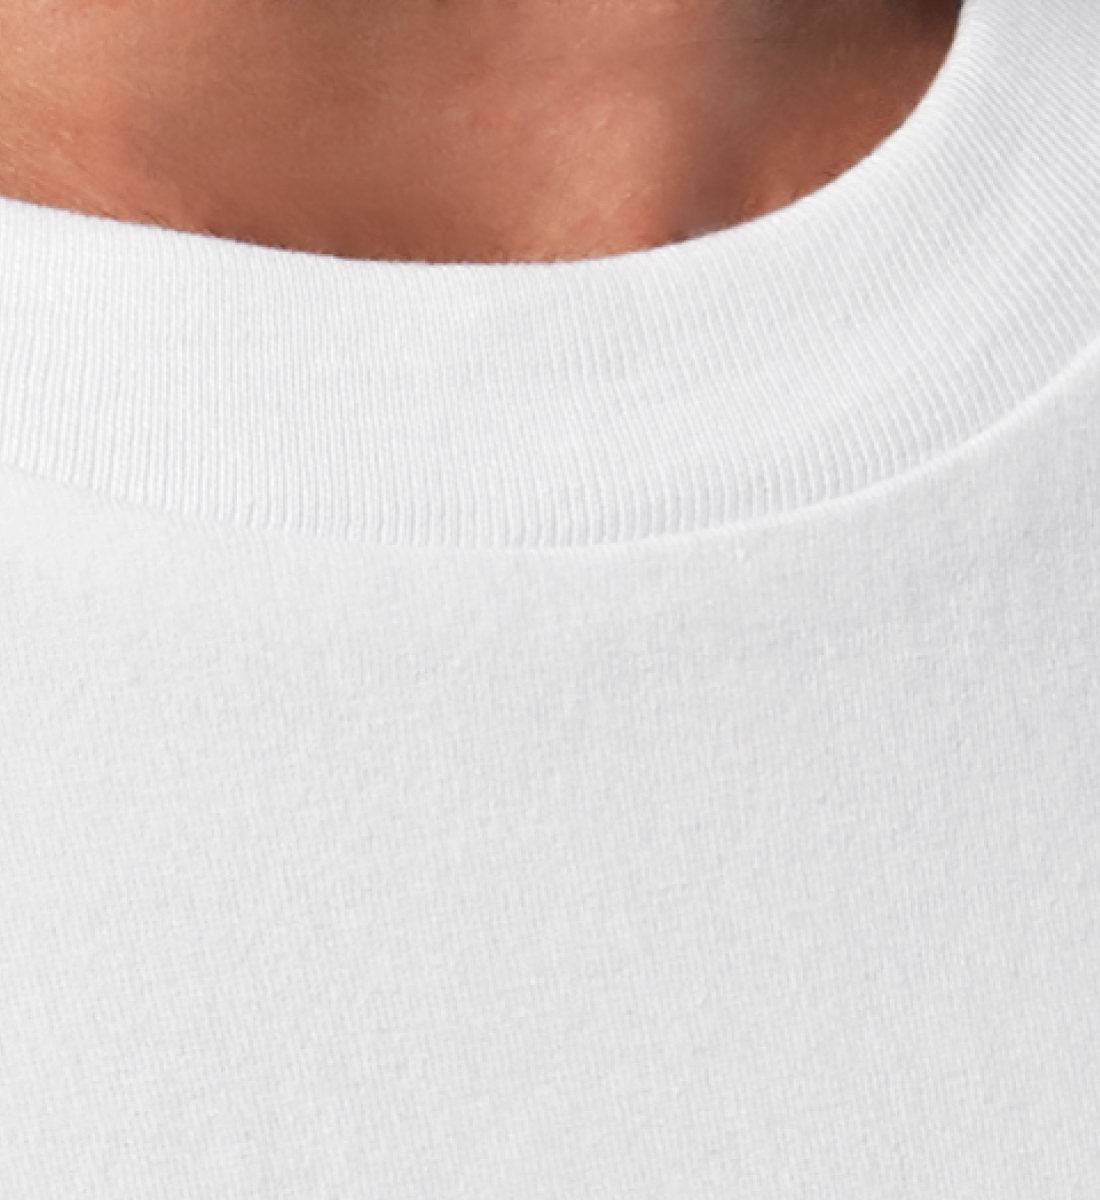 Weißes T-Shirt Unisex Relaxed Fit für Frauen und Männer bedruckt mit dem Design der Roger Rockawoo Kollektion Rocknroll never lies